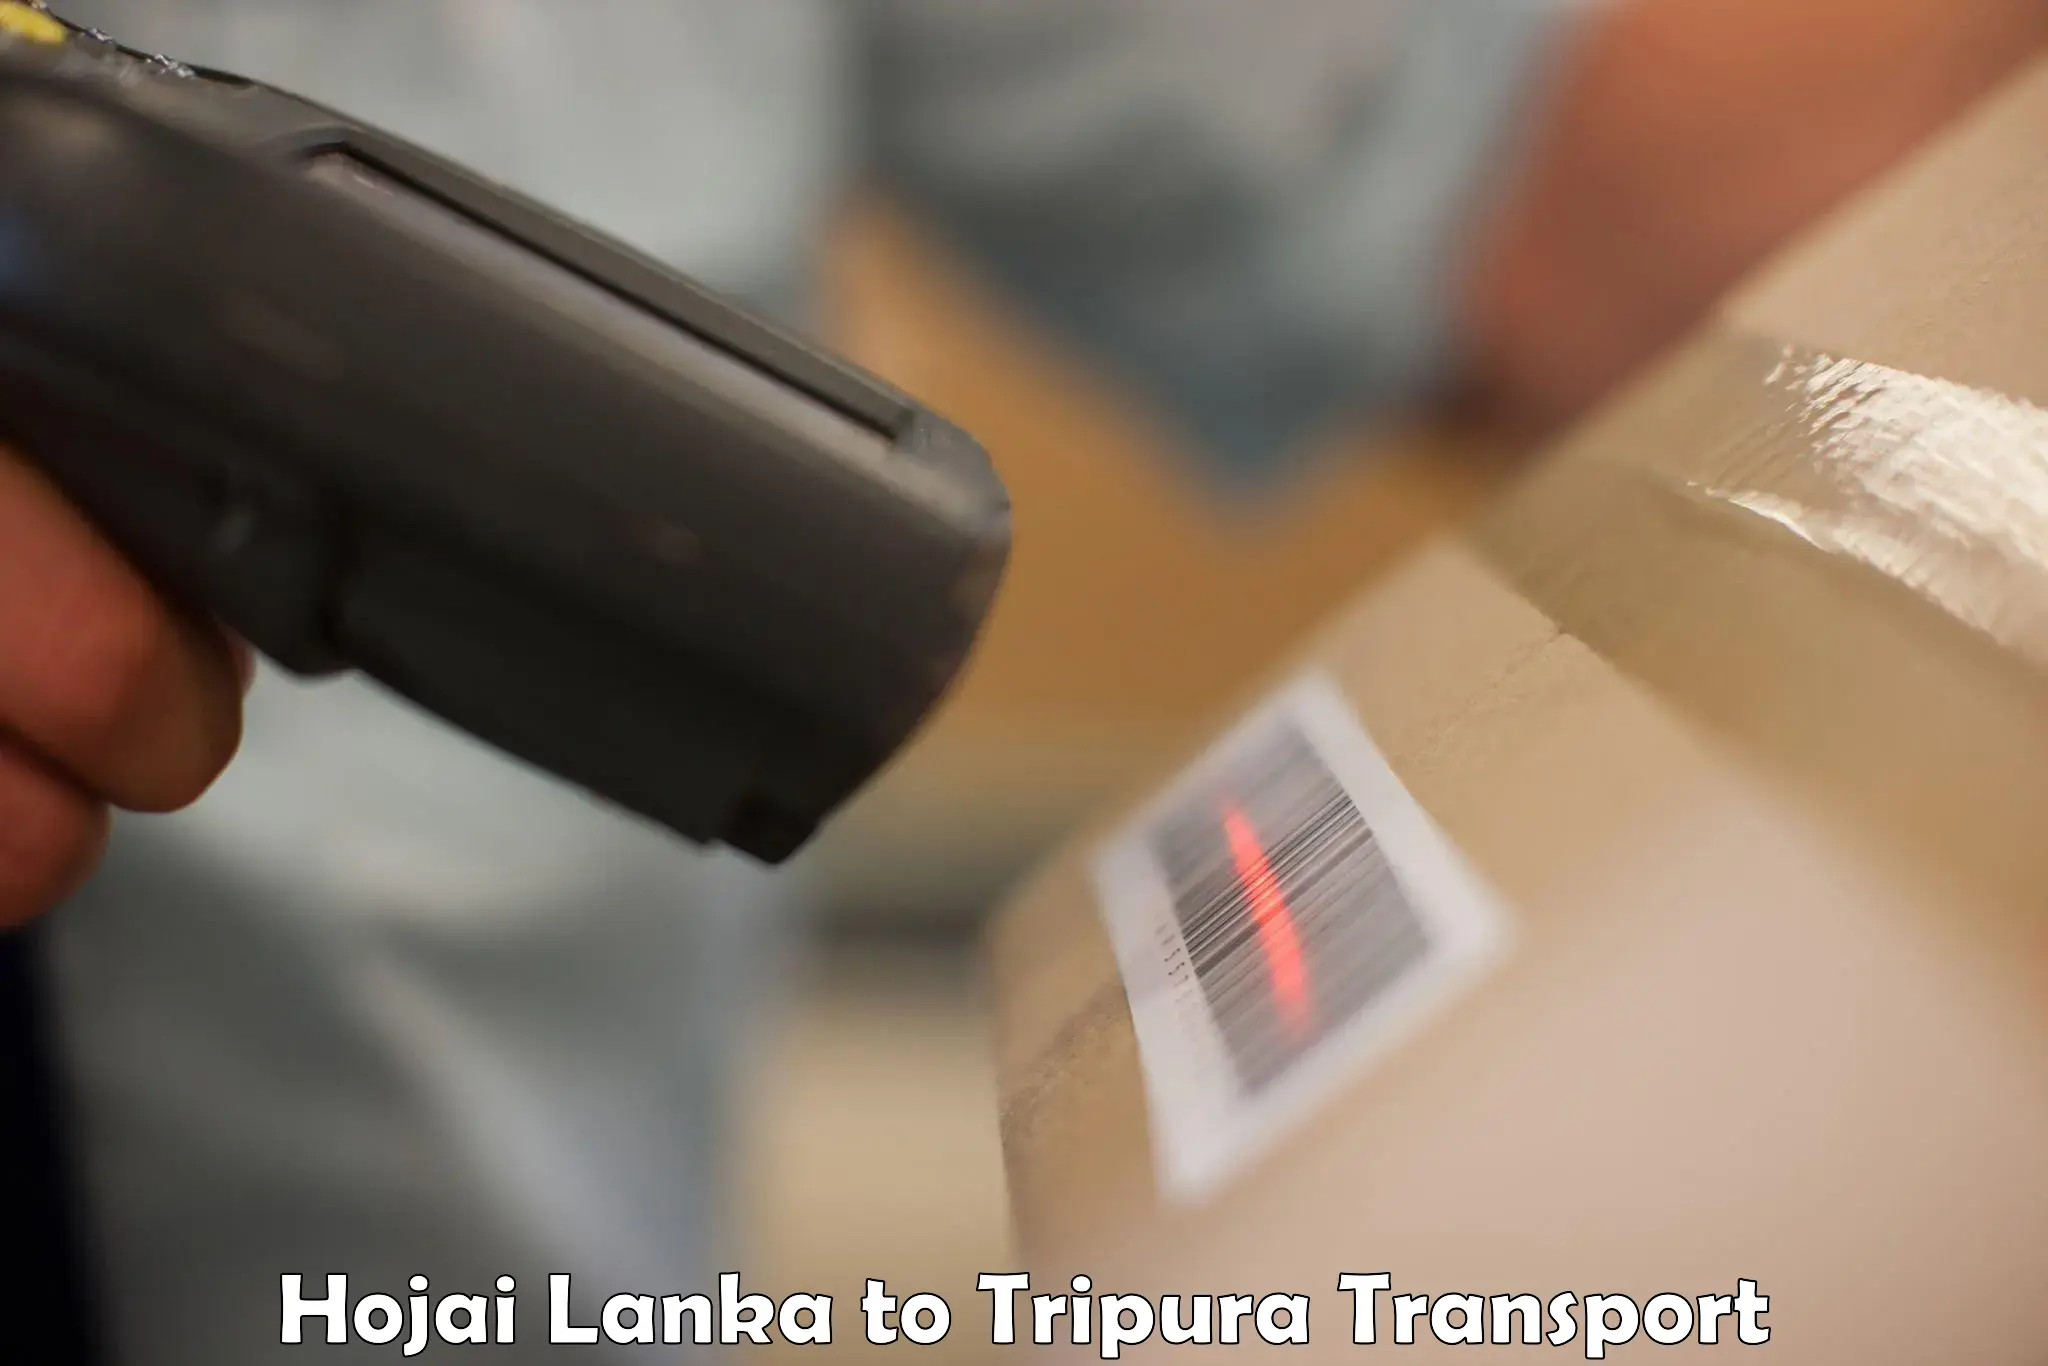 Furniture transport service Hojai Lanka to Manughat